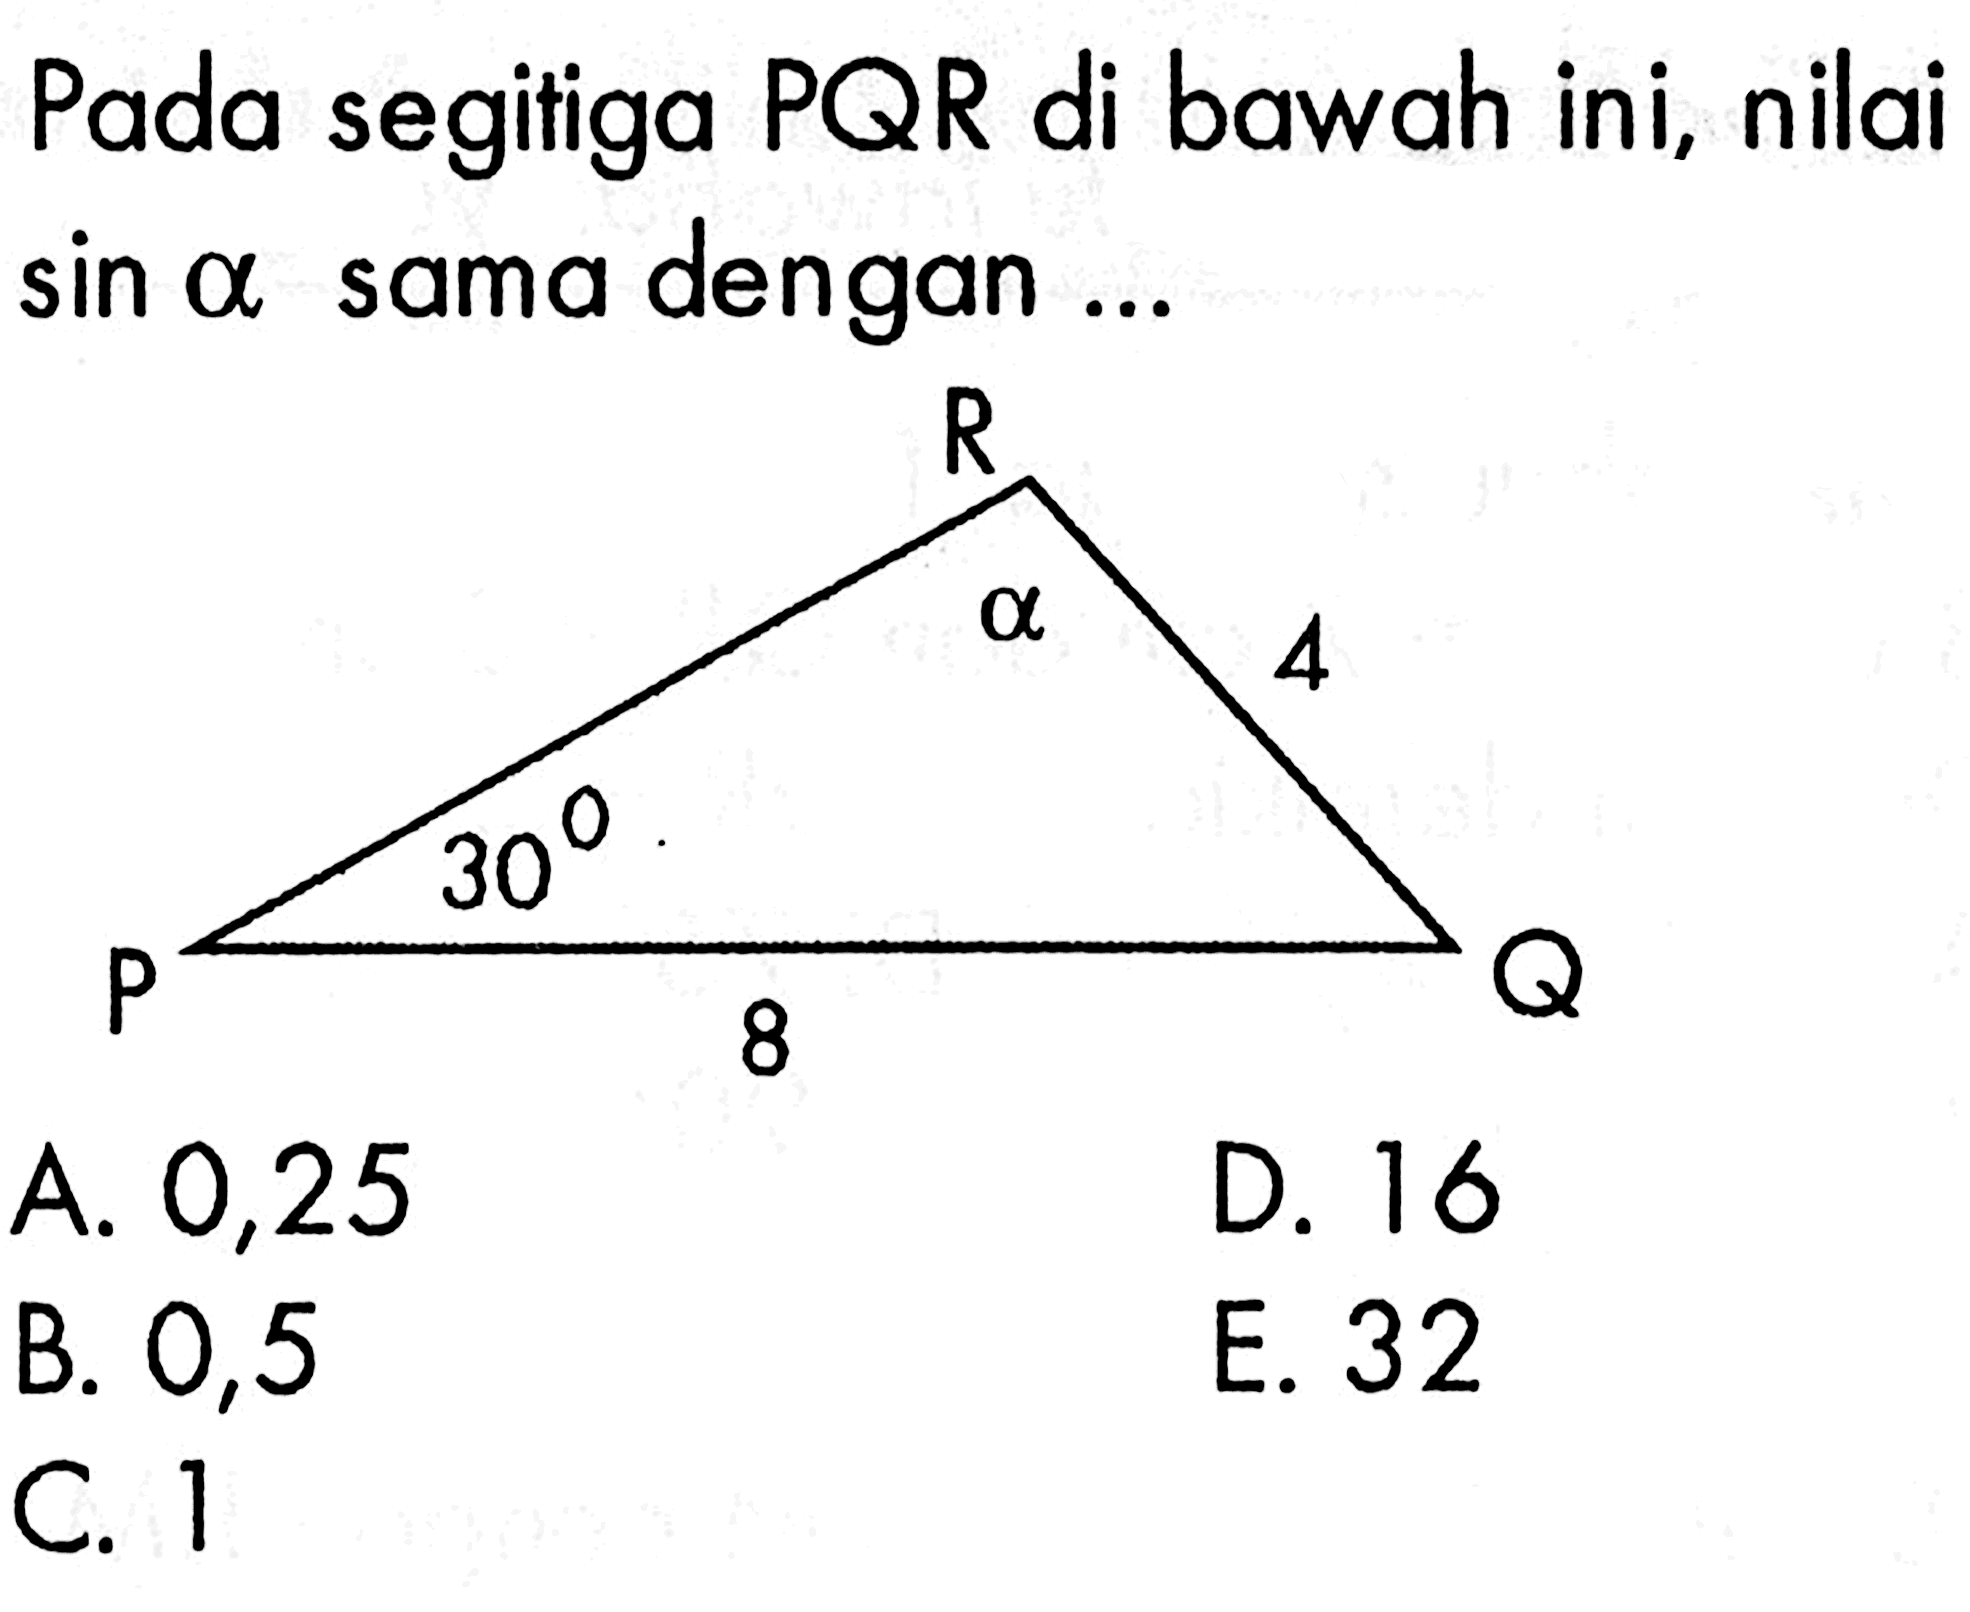 Pada segitiga PQR di bawah ini, nilai sin a sama dengan ... 30 8 4